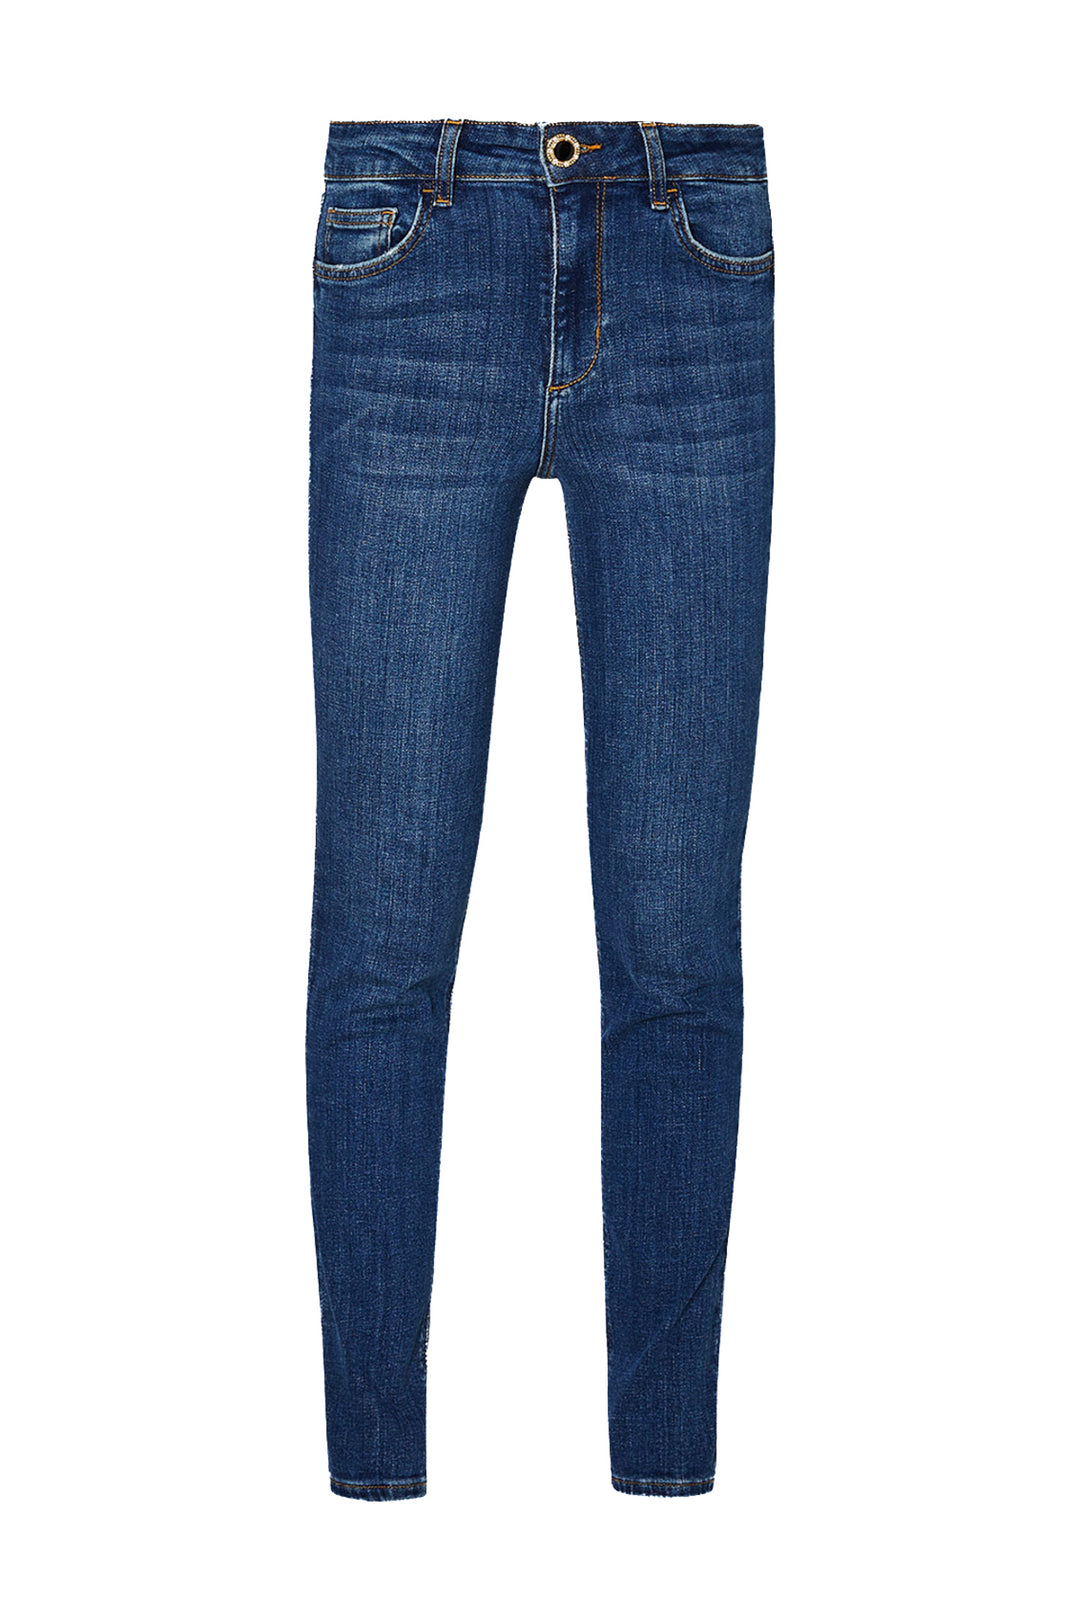 LIU JO Jeans skinny ecosostenibili in denim di cotone stretch lavaggio used - Mancinelli 1954